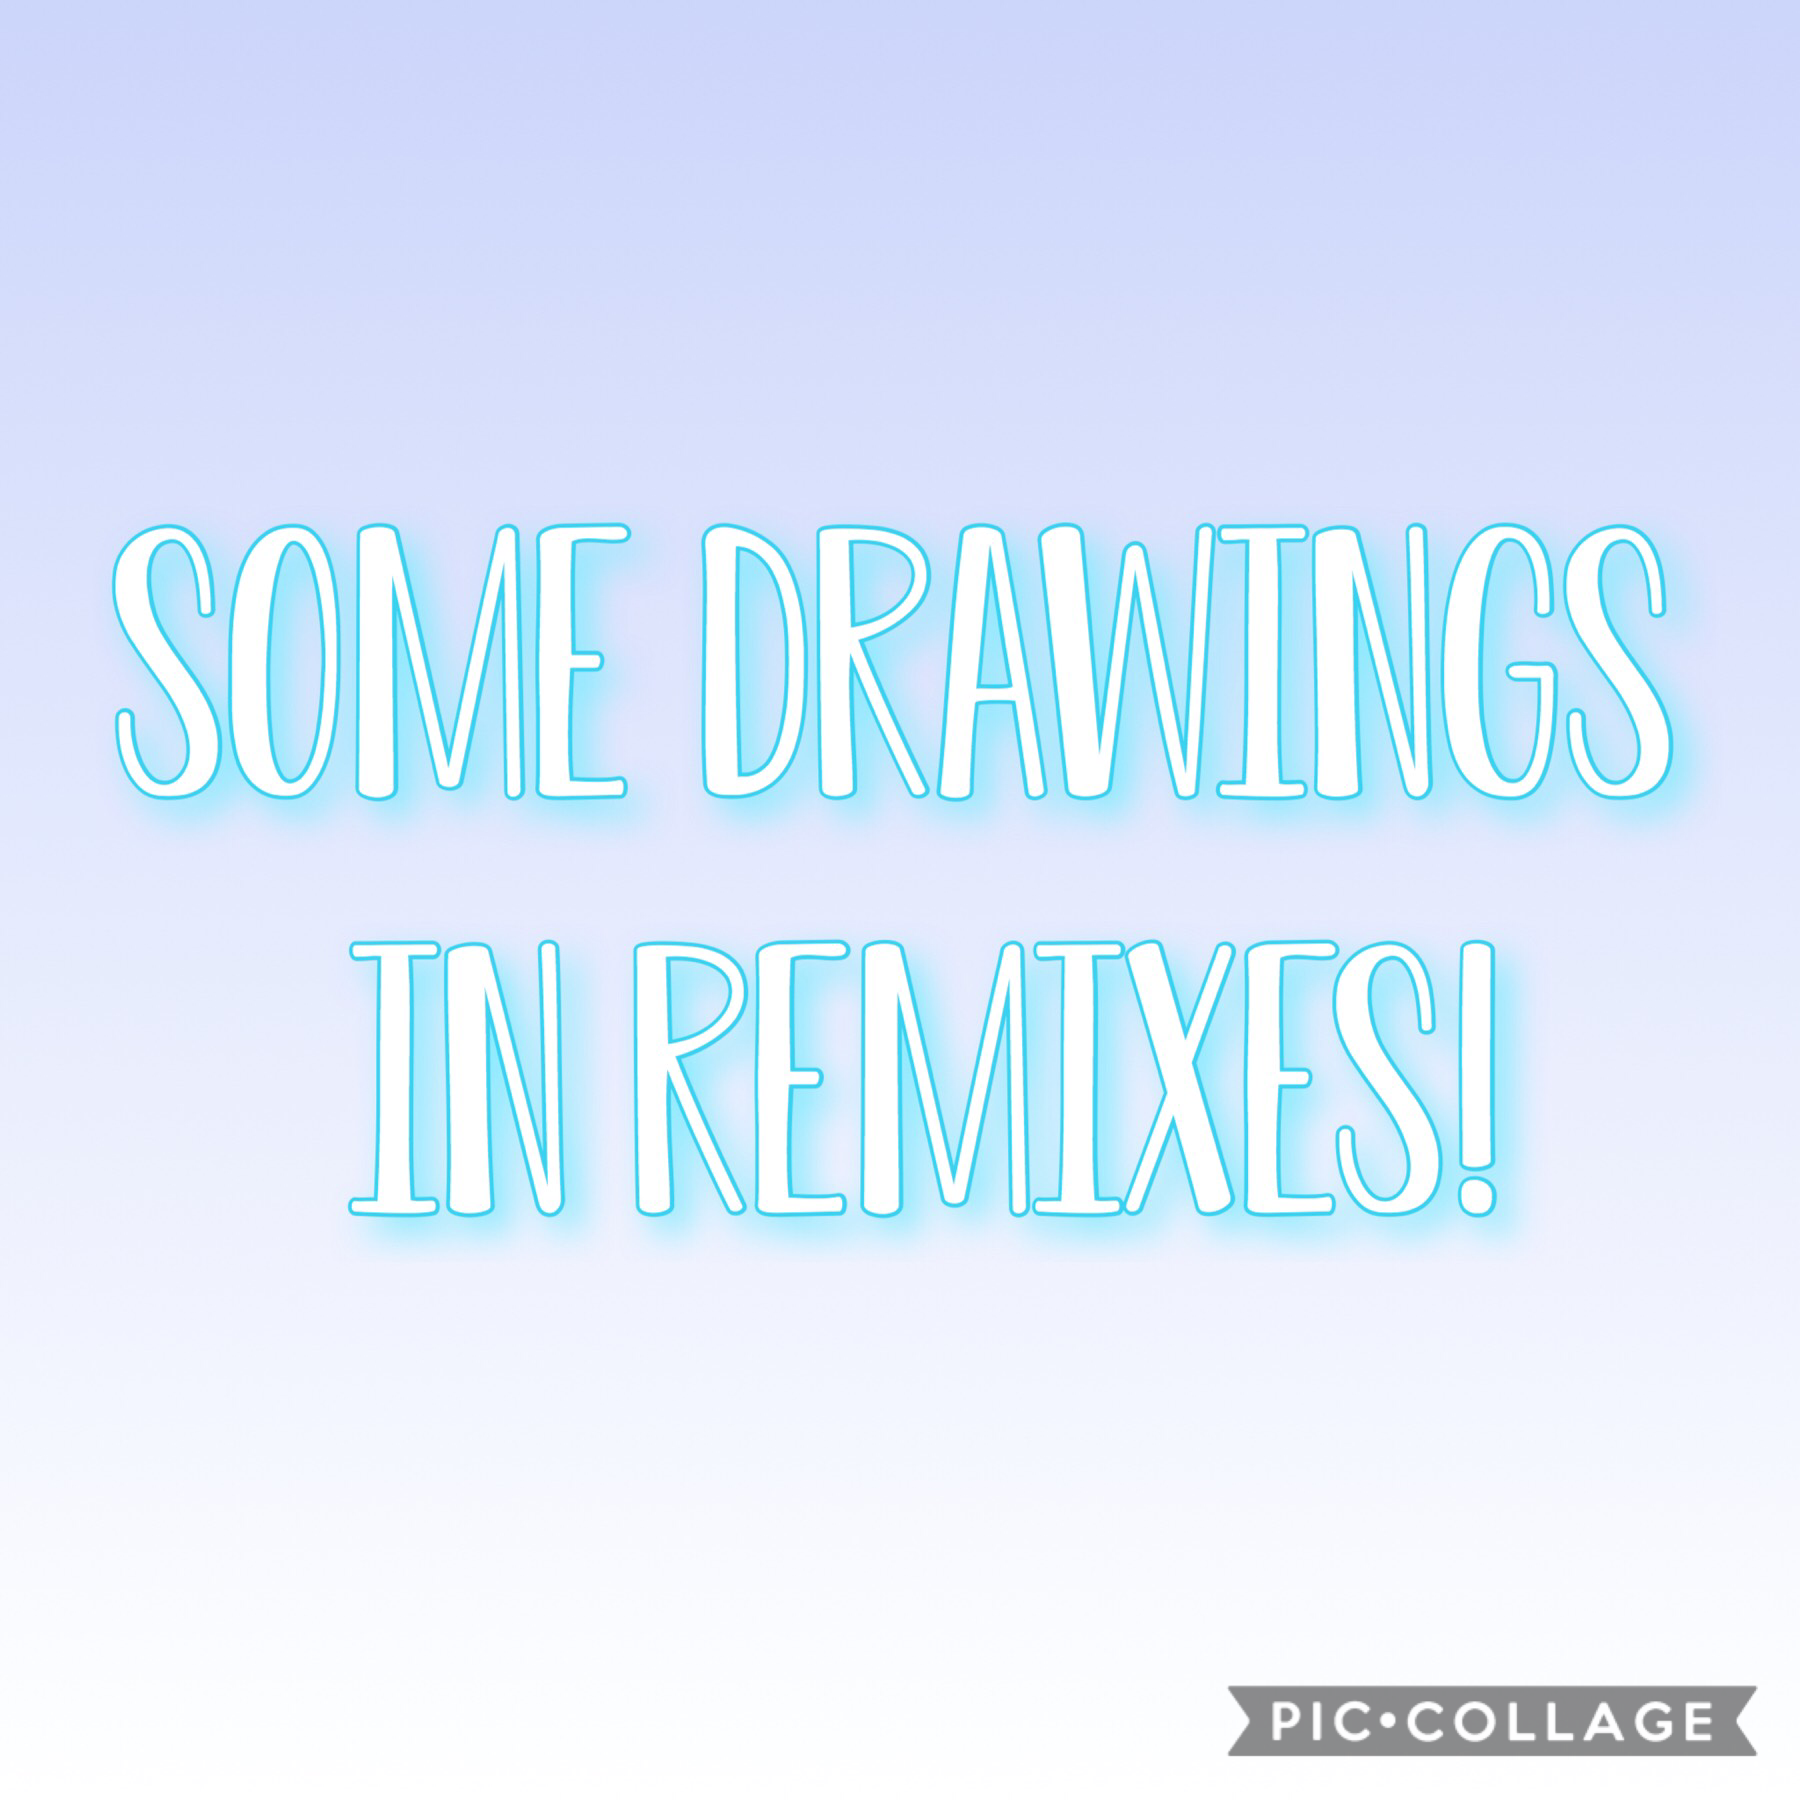 Check remixes!